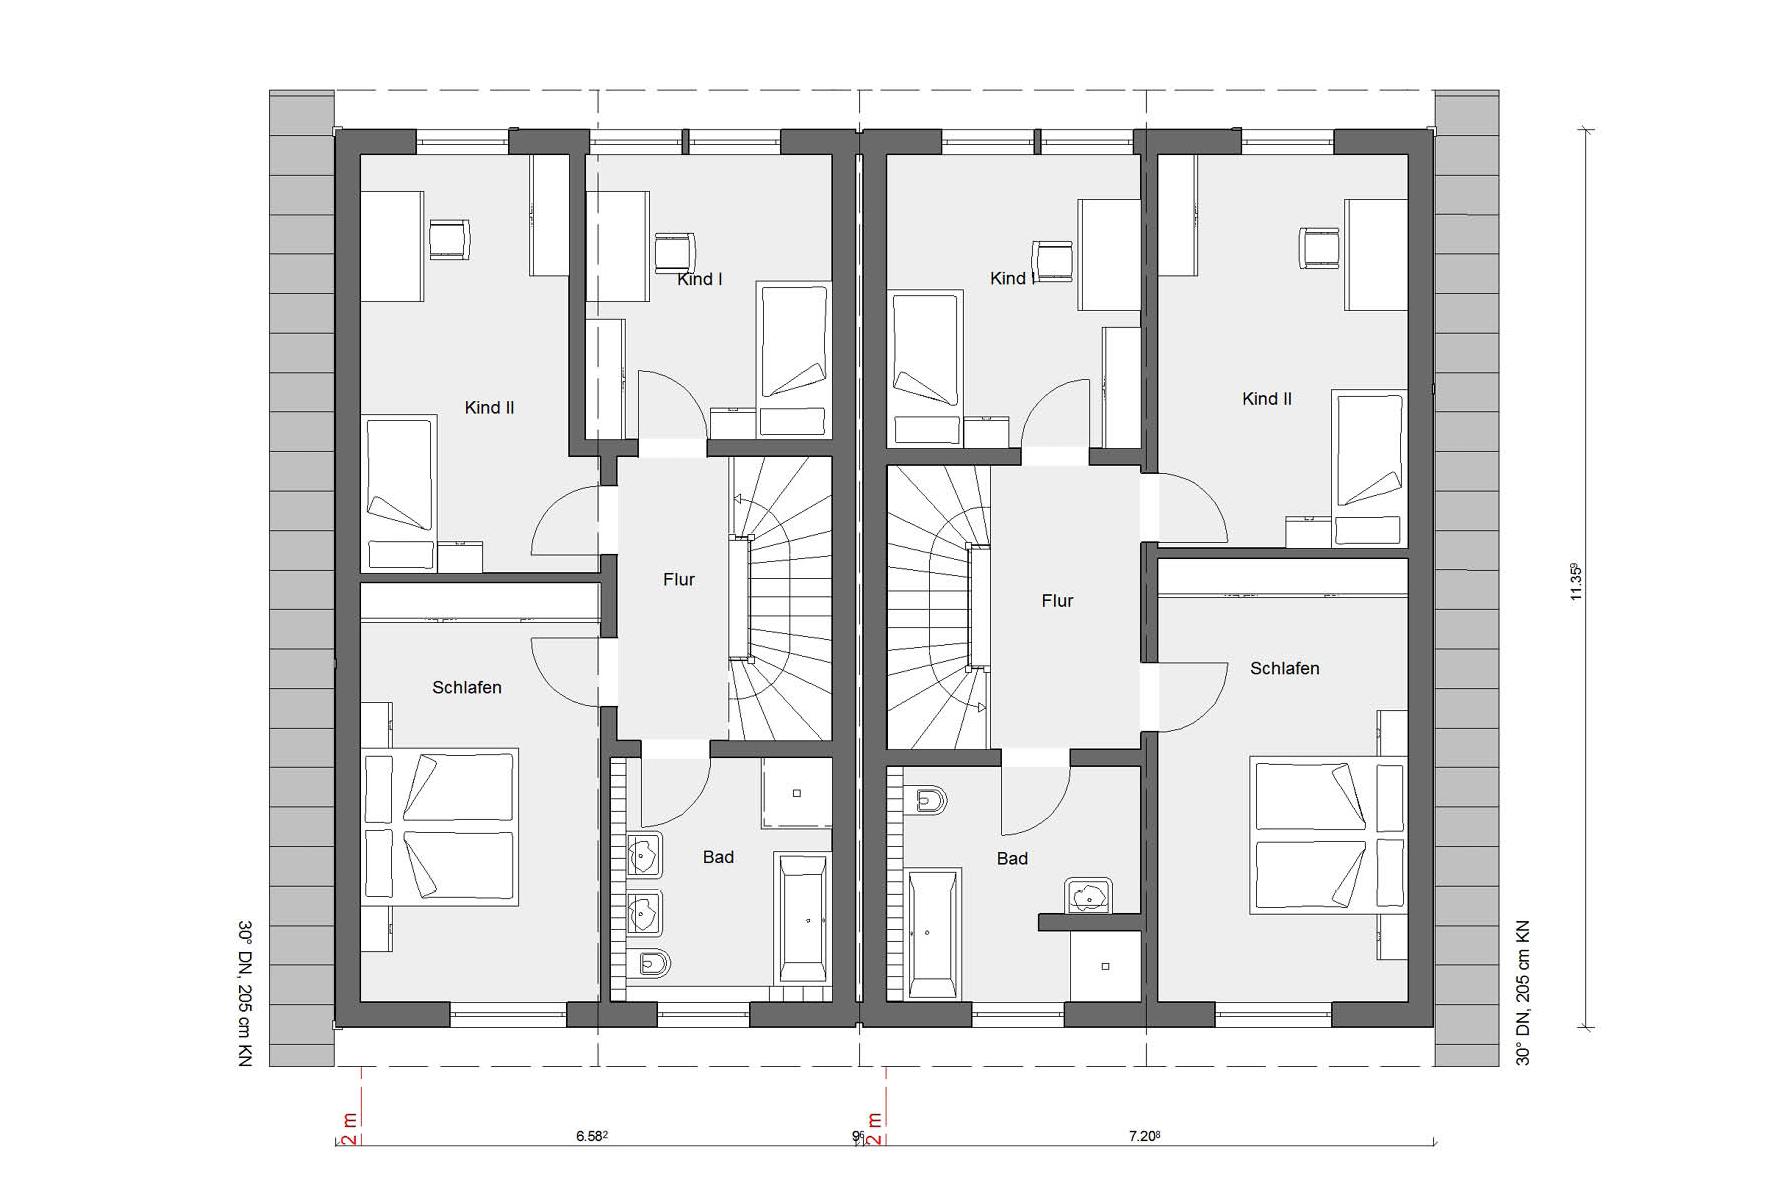 Pianta soffitta D 15-121.3/ D 15-133.1 Casa bifamiliare con tetto a due falde 